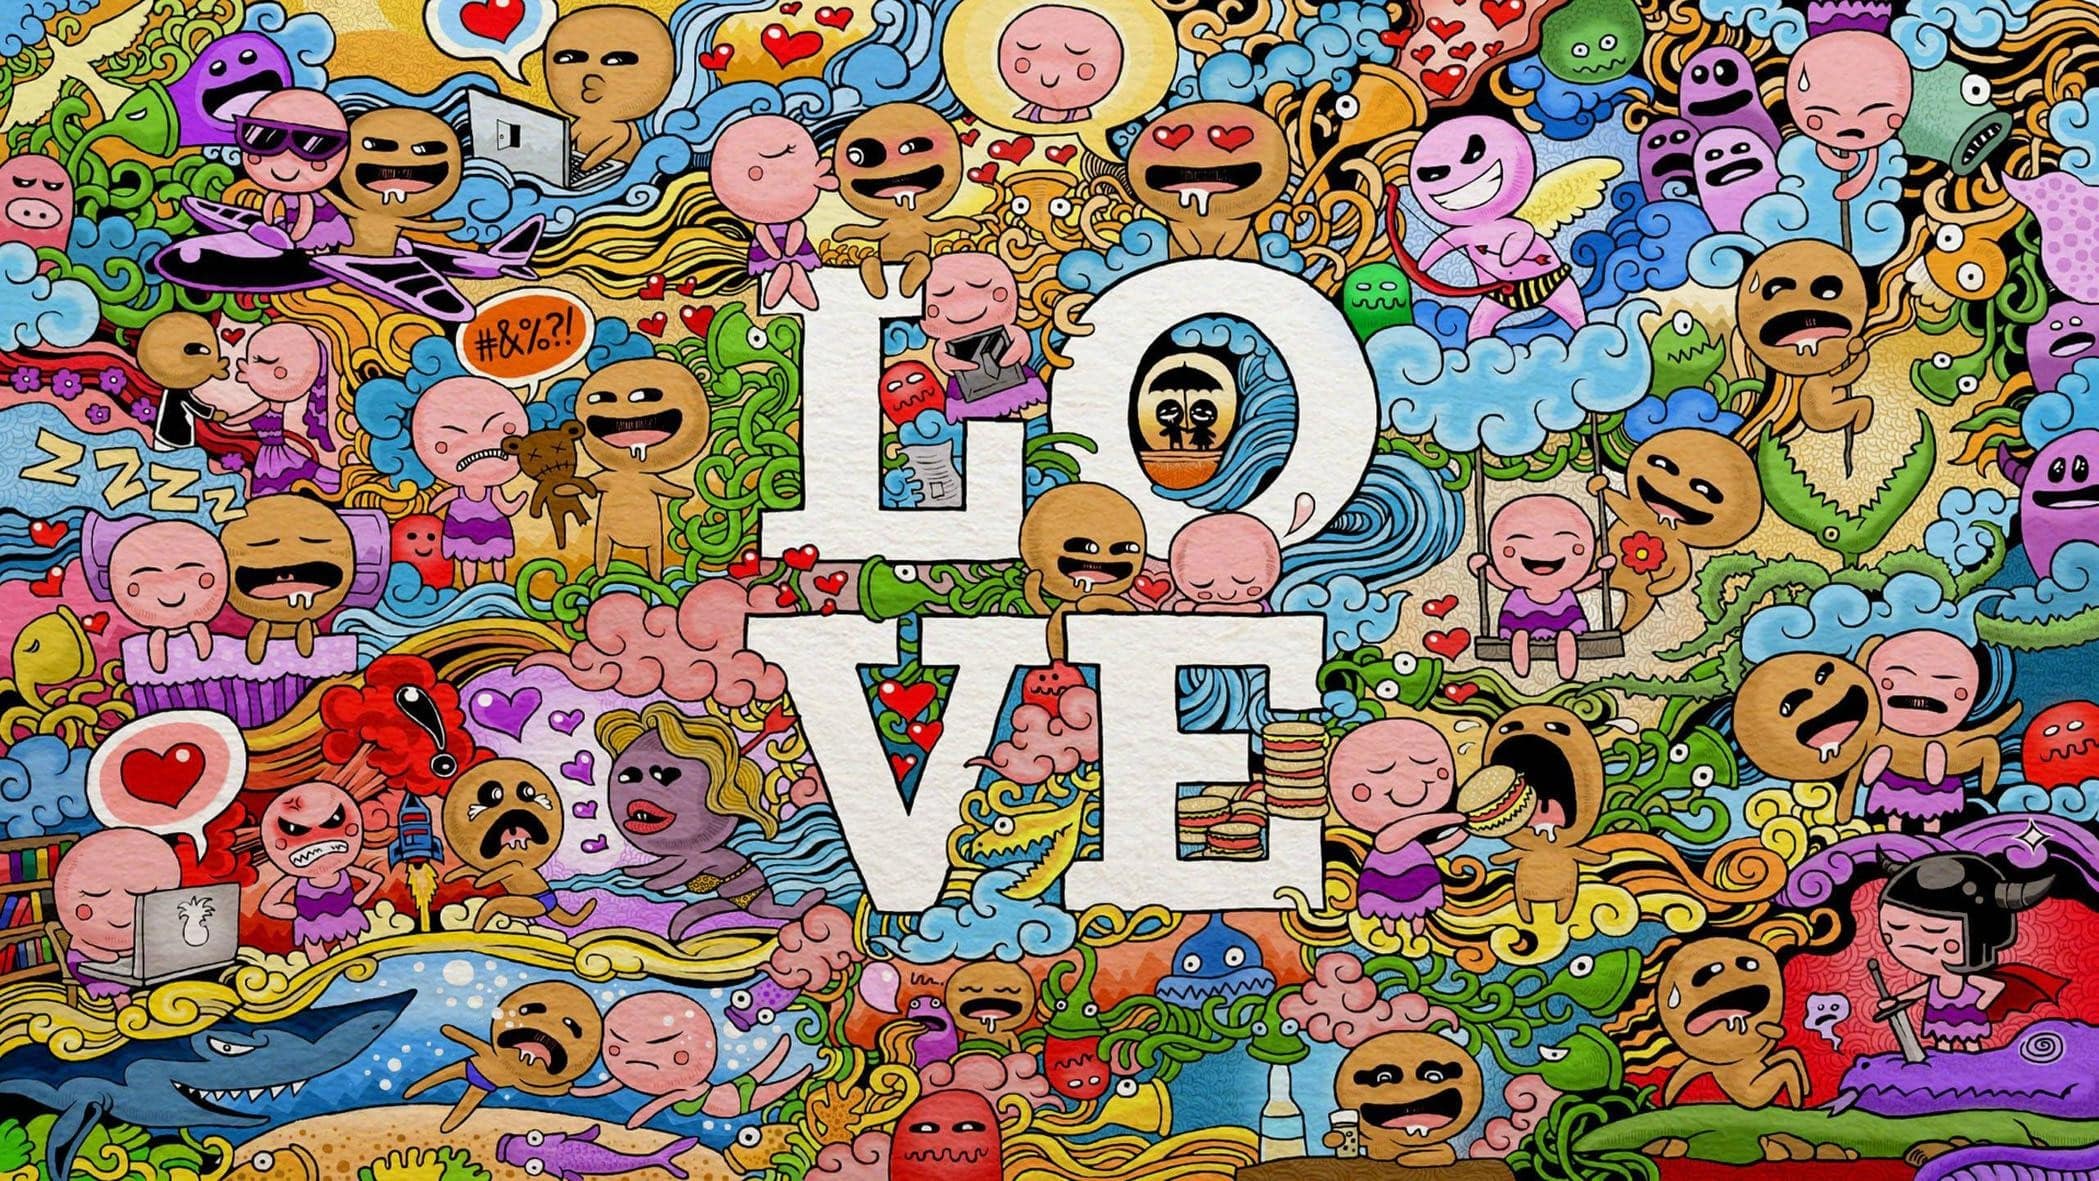 Doodle Love Wallpaper